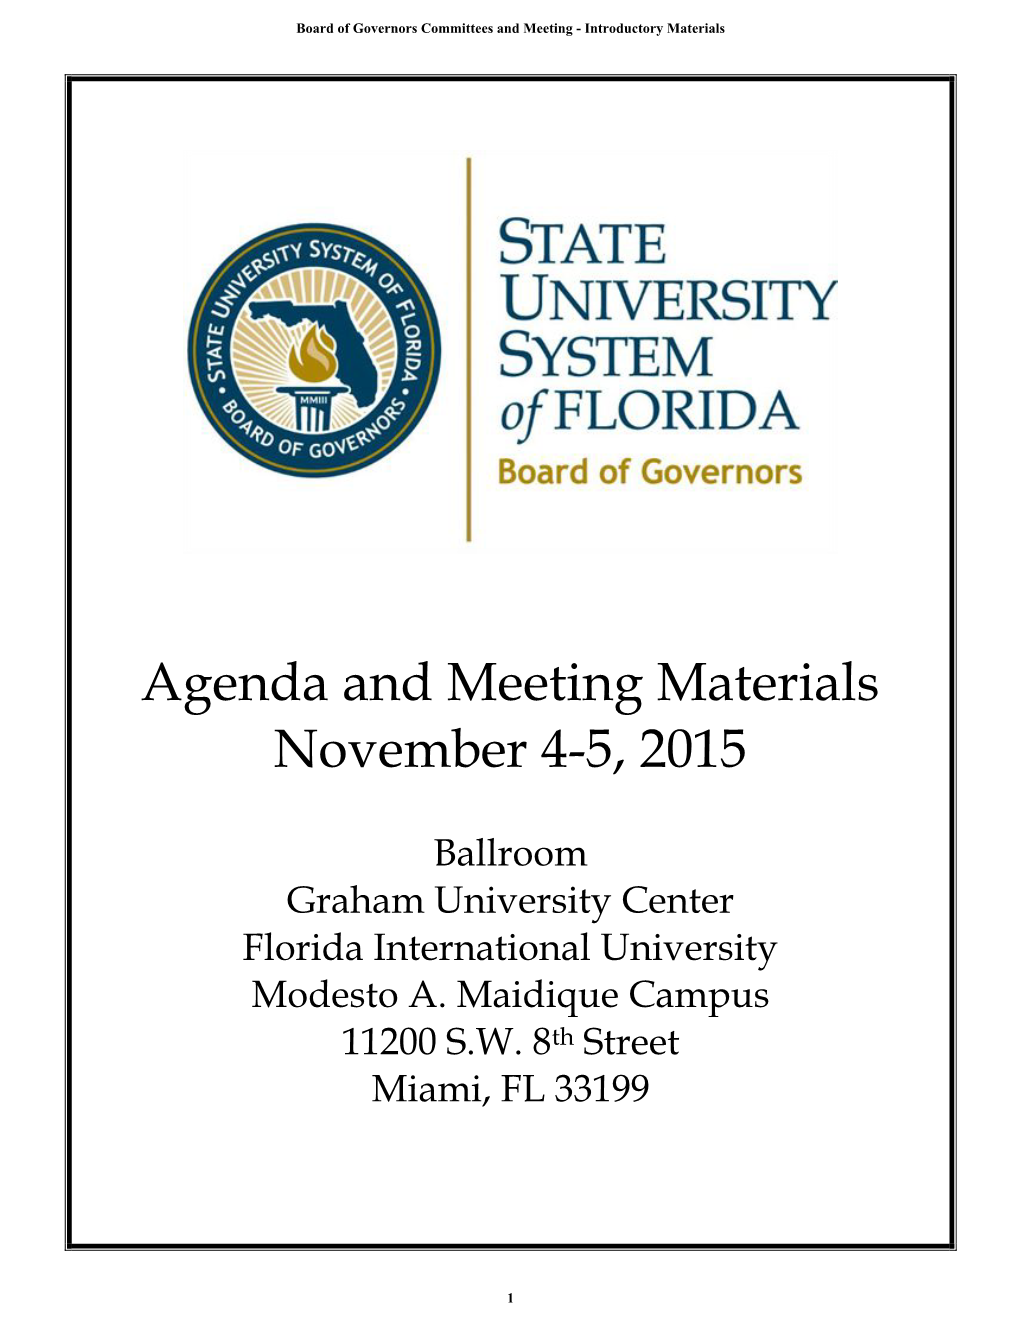 Agenda and Meeting Materials November 4-5, 2015